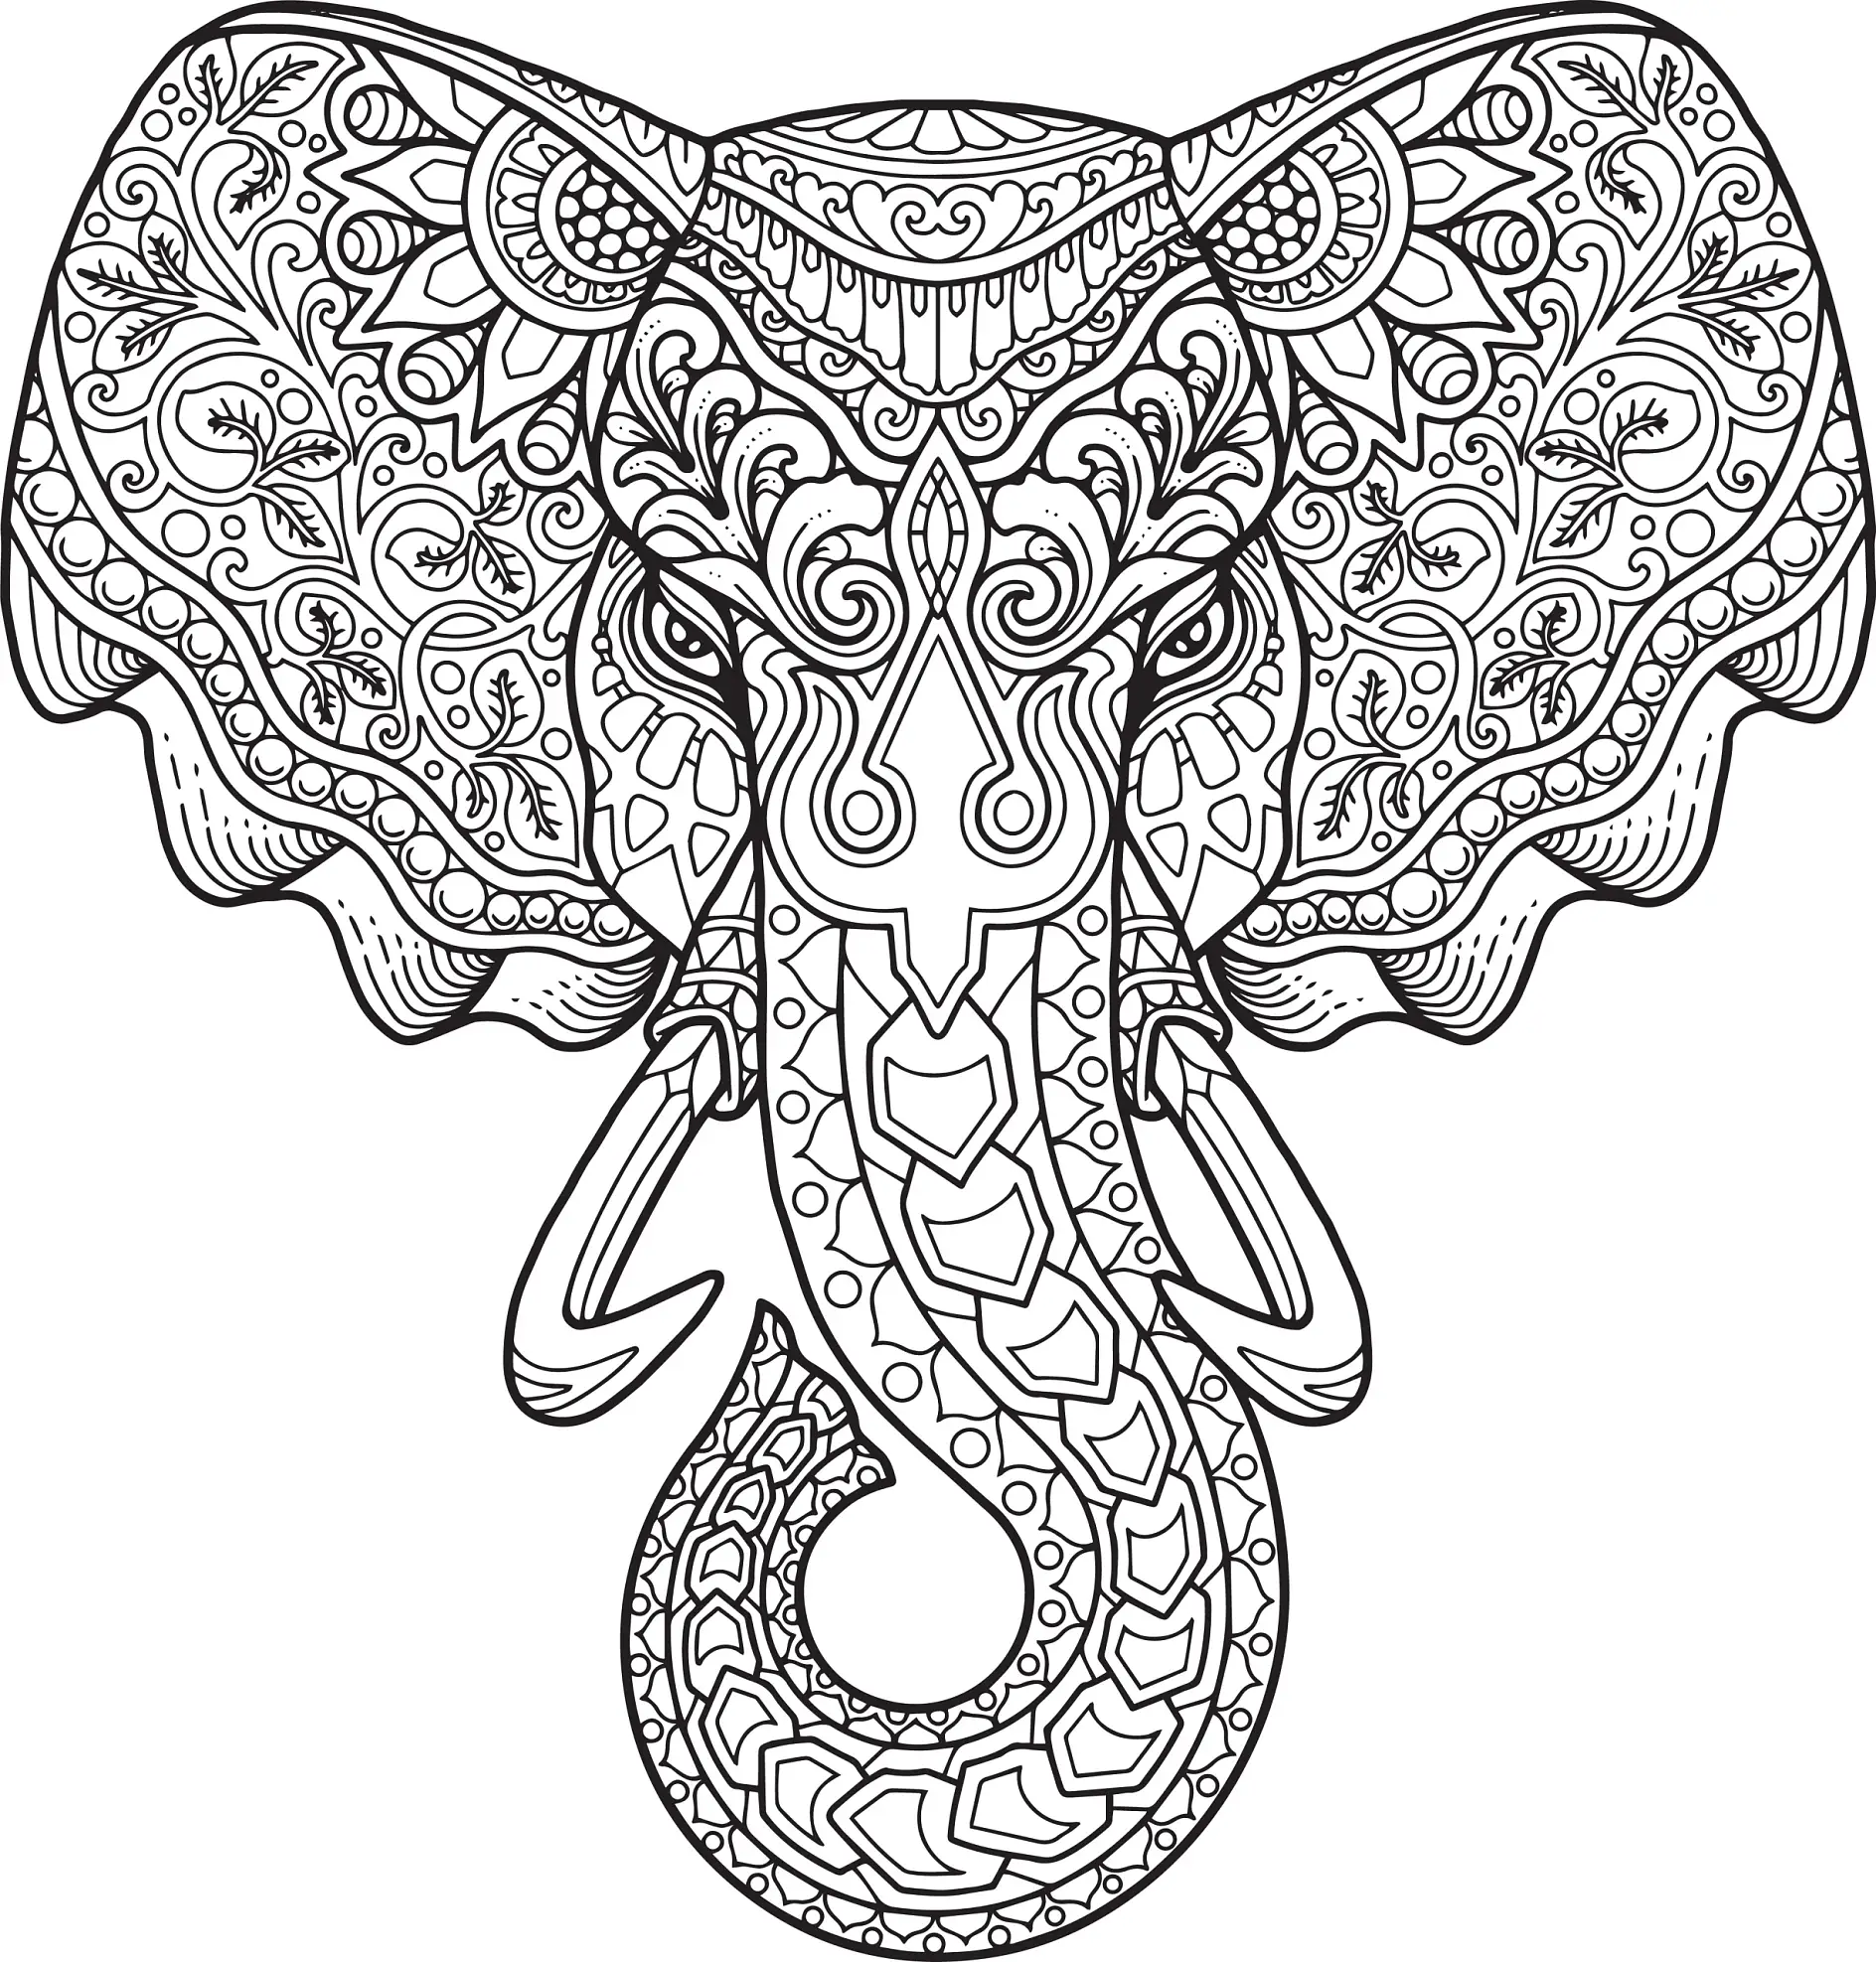 Ausmalbild Mandala Elefant mit detaillierten Ornamenten und verschnörkelten Mustern